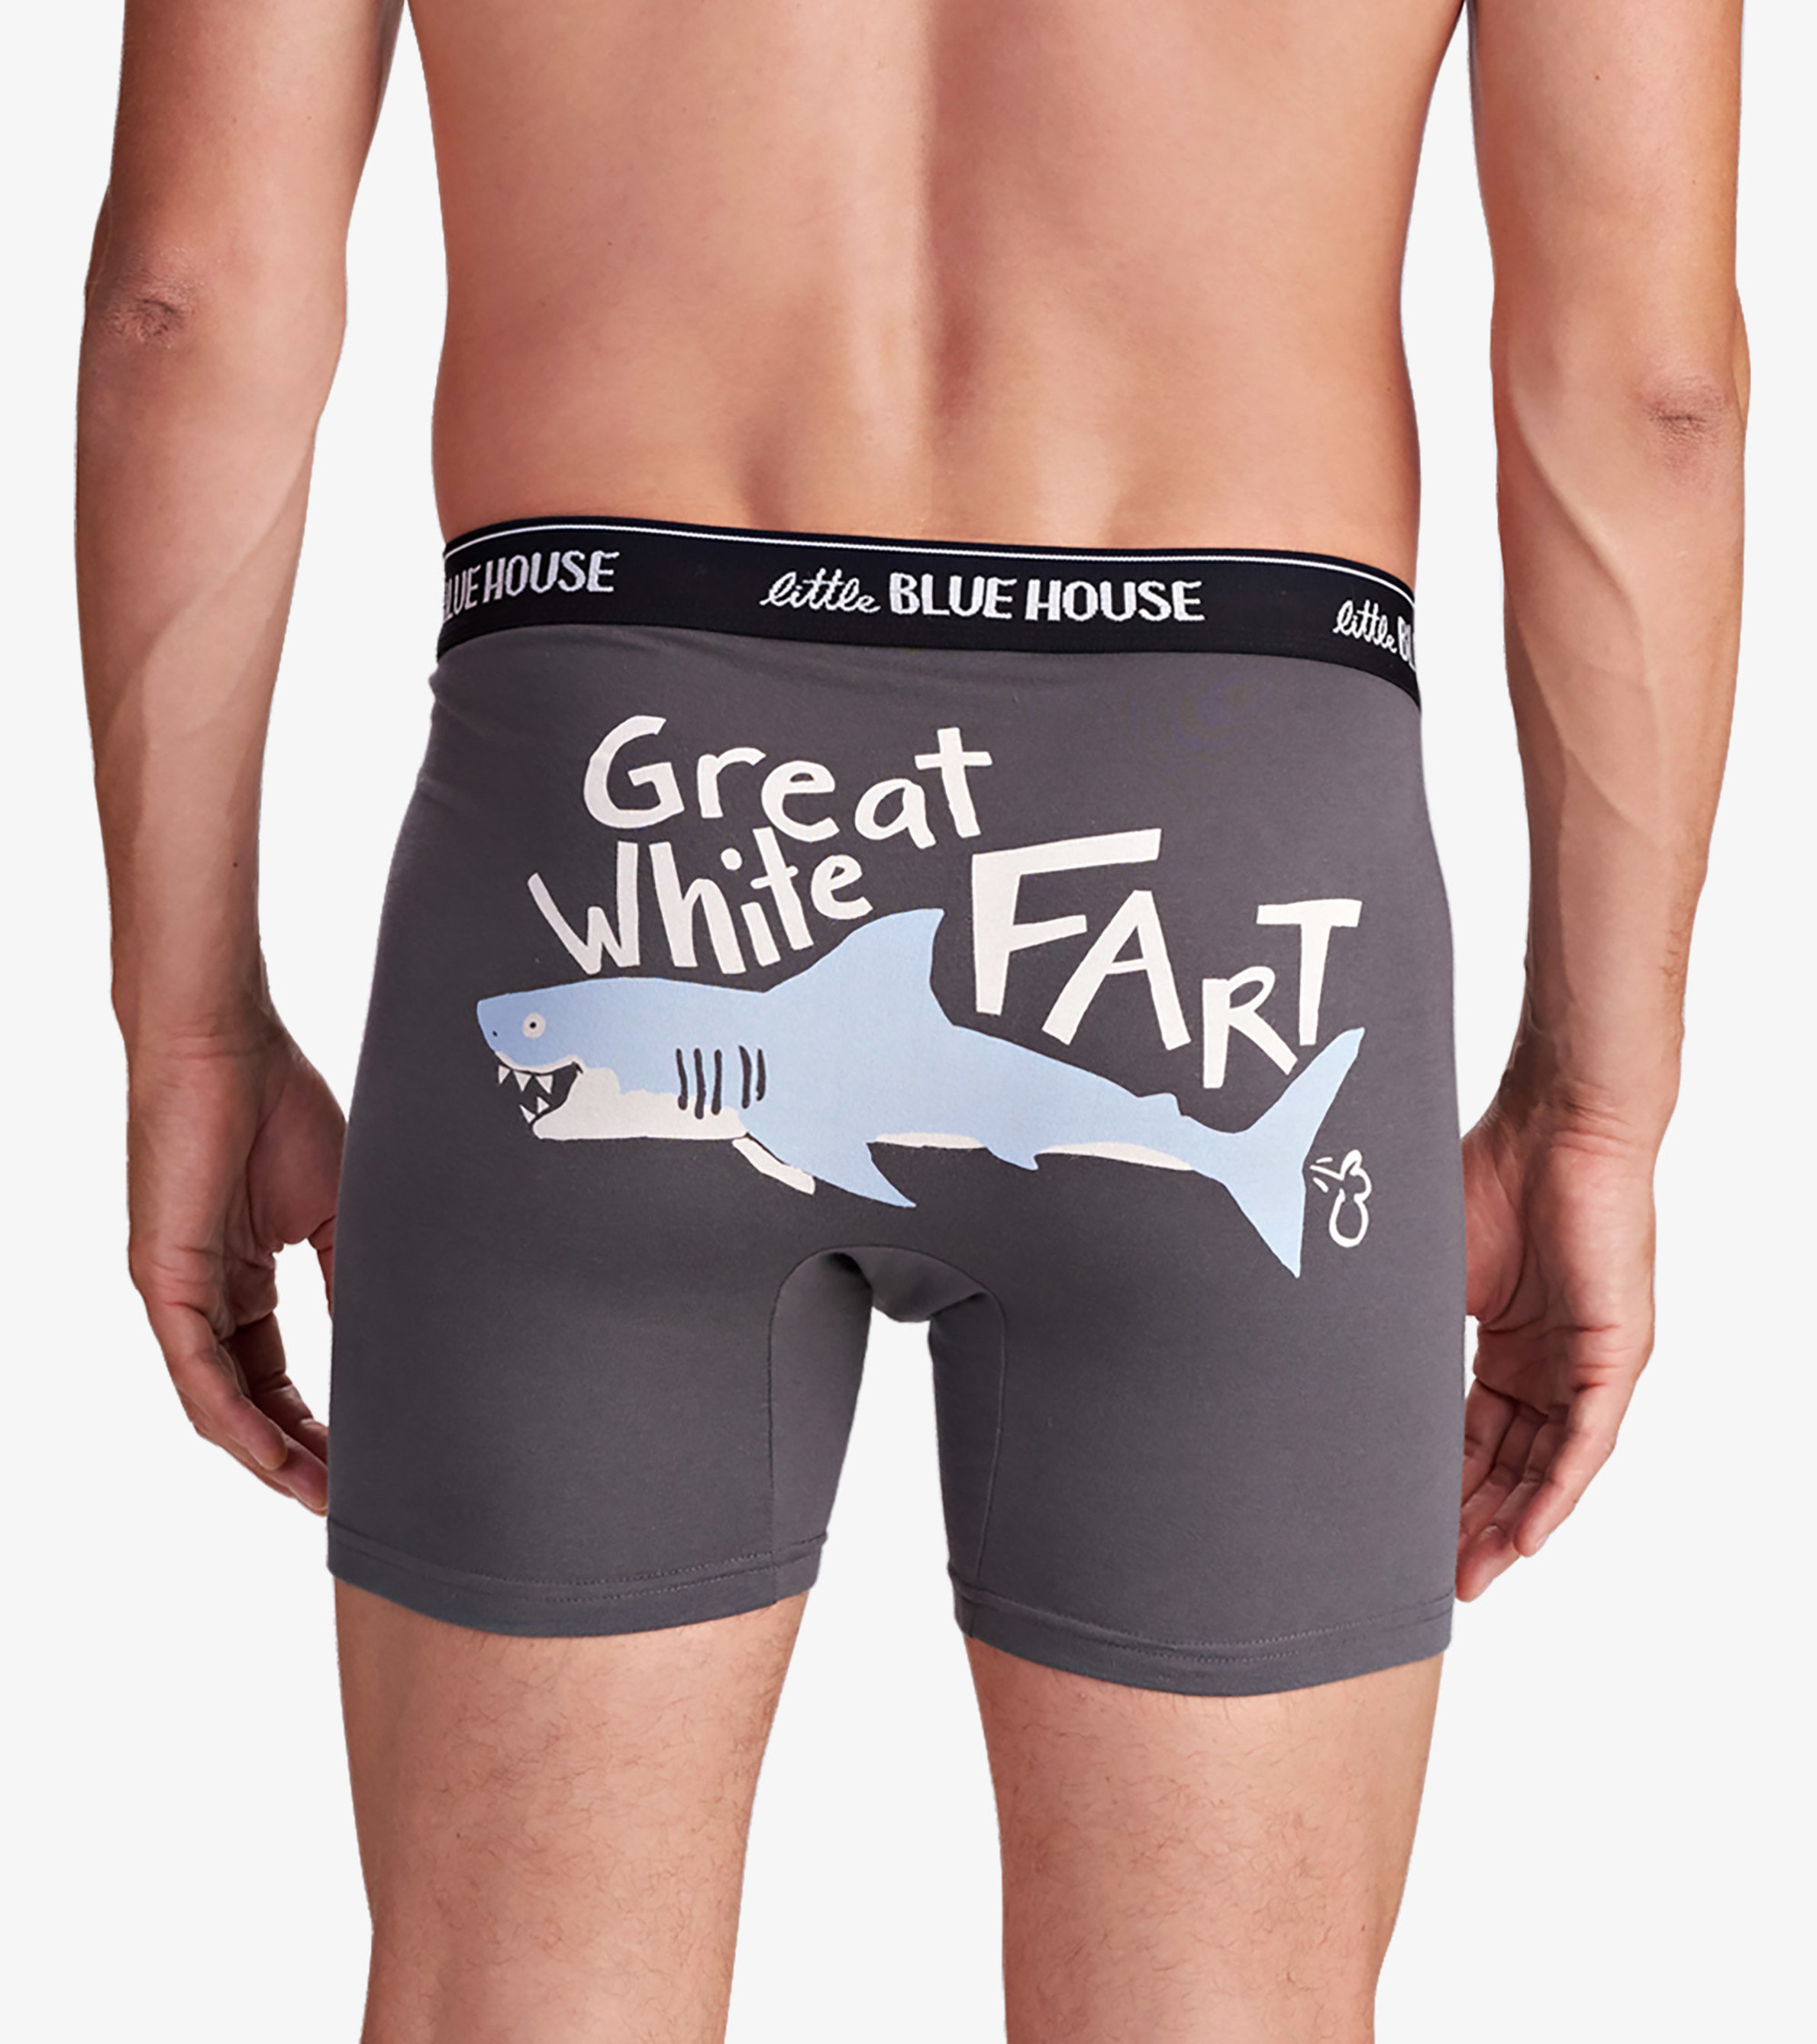 Fun Novelty Boxer Briefs for Men Fart Champ Underwear Gag Gift 